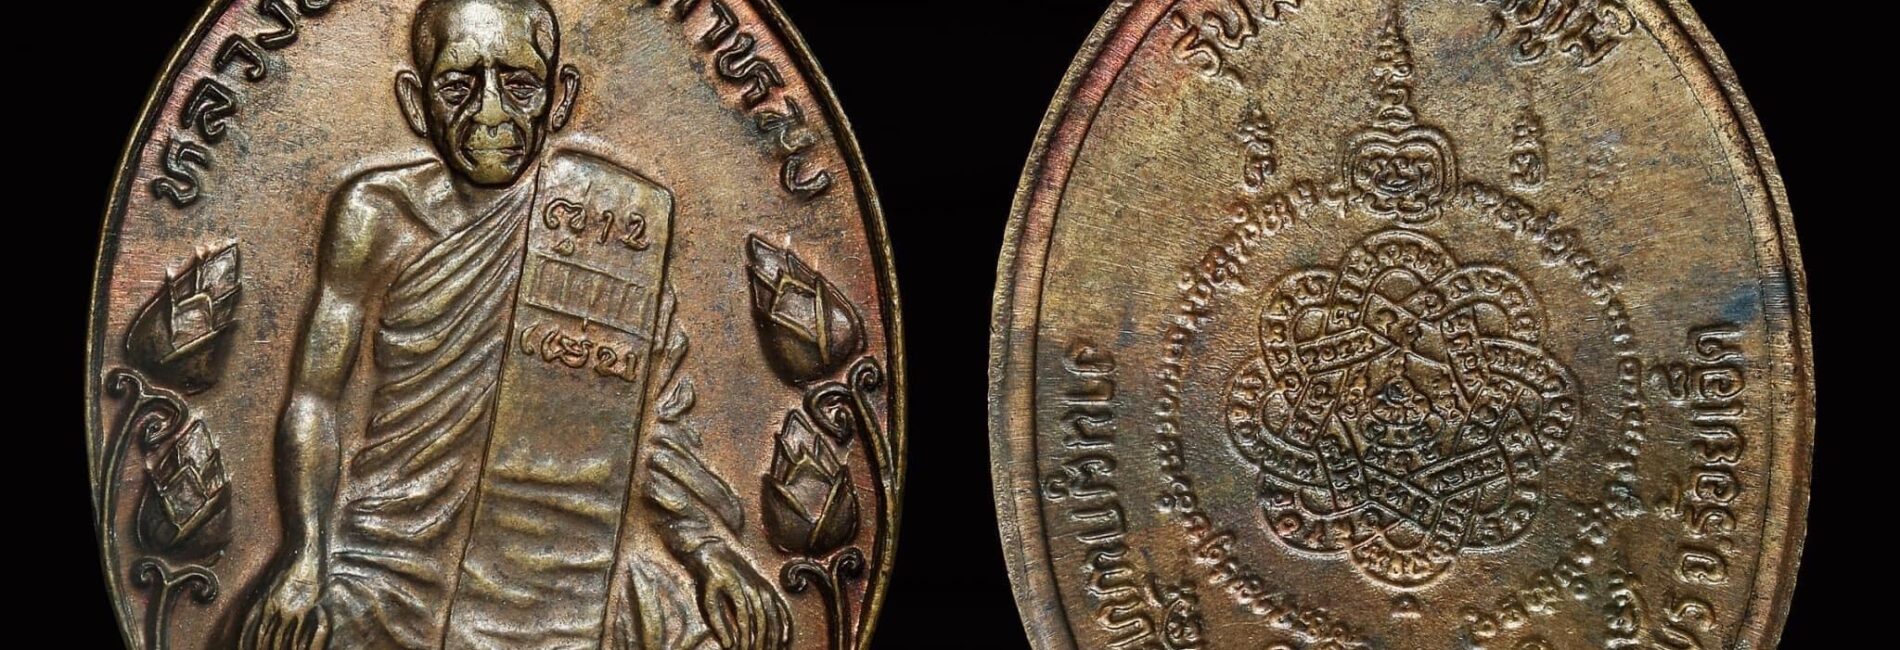 เหรียญบัวใหญ่ หลวงพ่อสุด วัดกาหลง ปี ๒๕๒๒ เนื้อnoJแดง ส